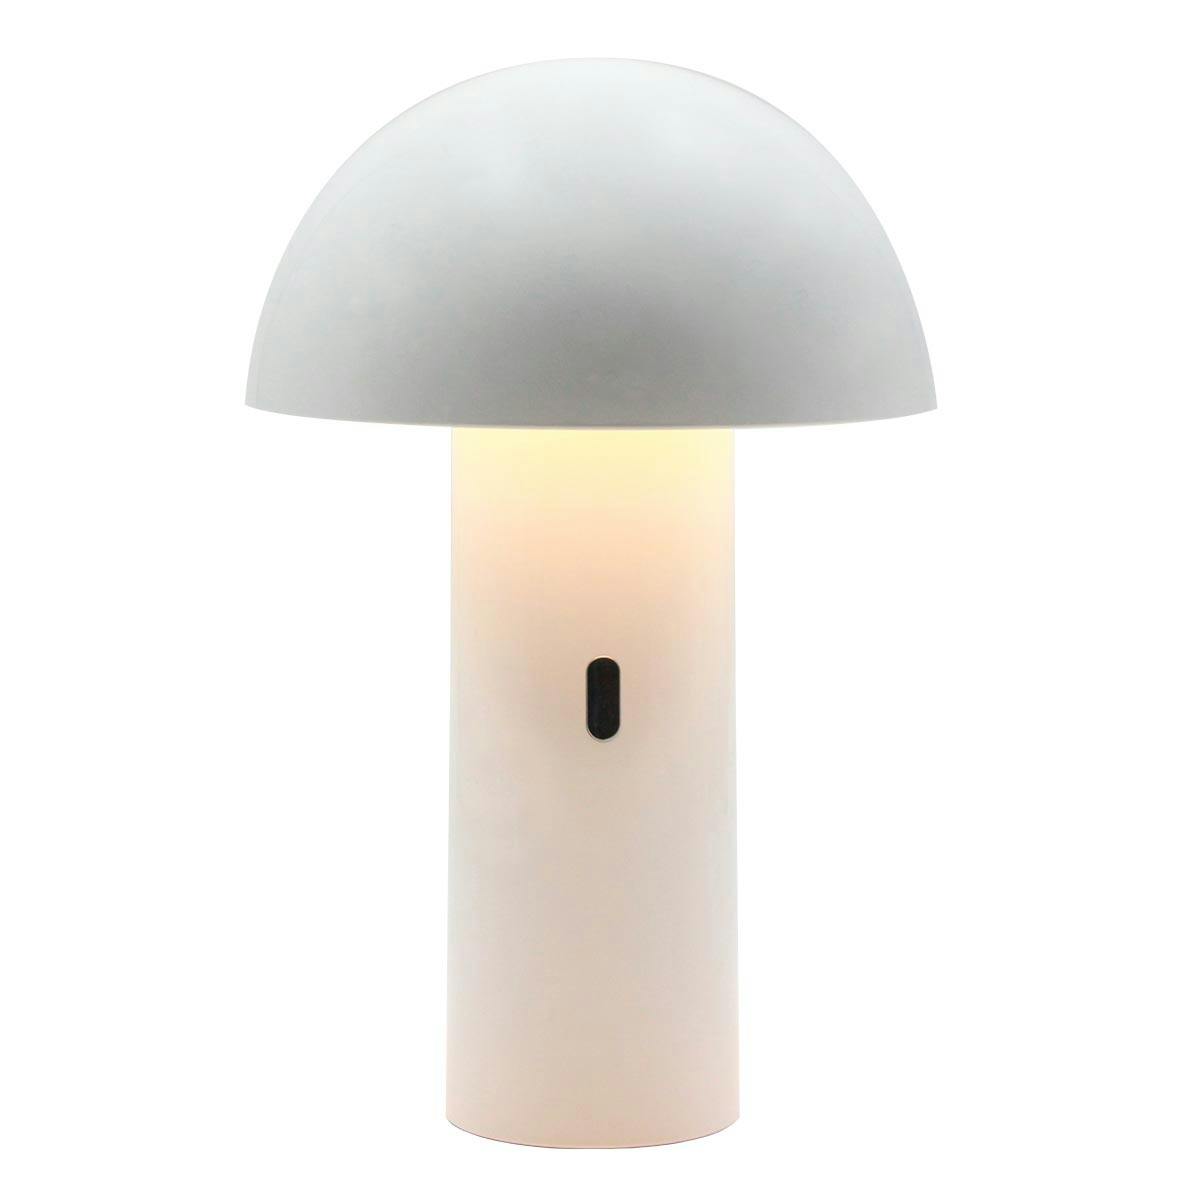 LUMISKY lampe de table sans fil tête orientable LED blanc chaud